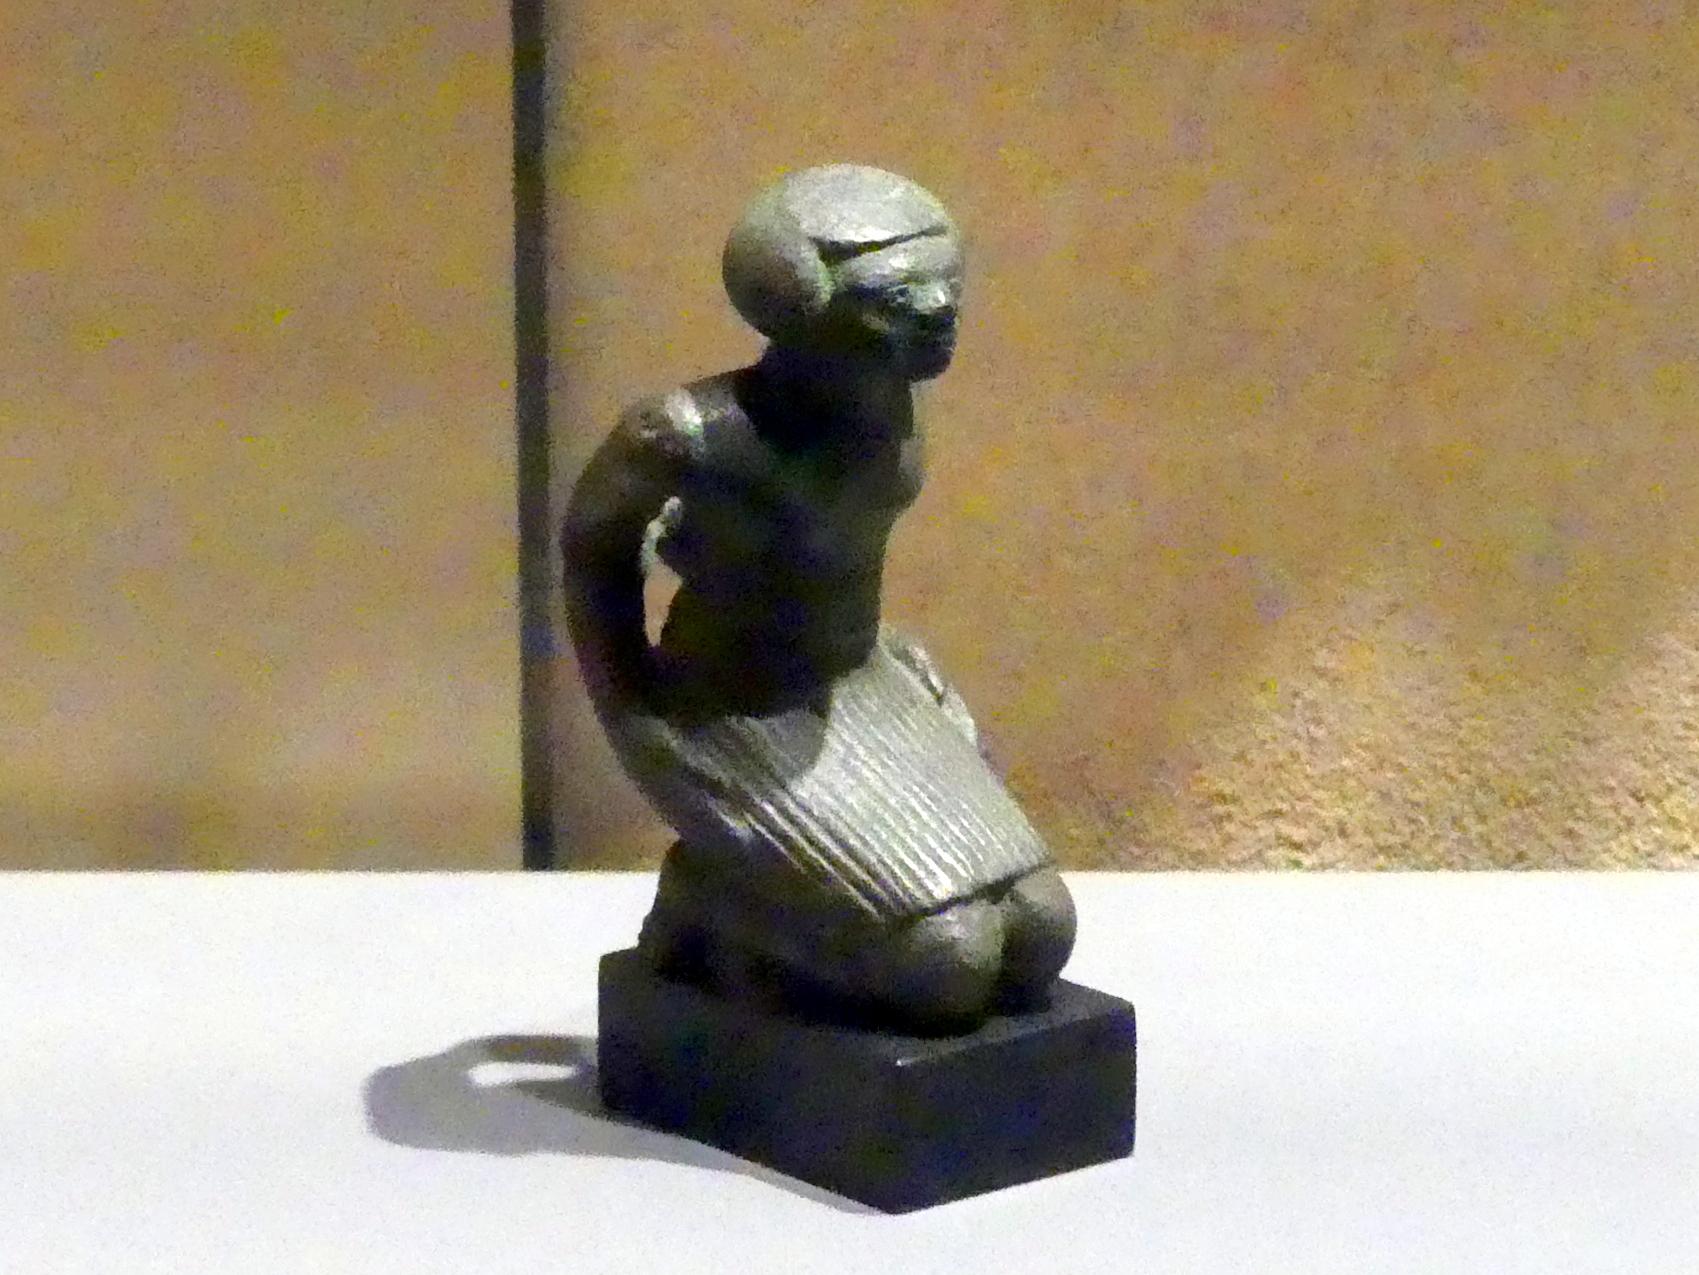 Figur eines knienden und gefesselten nubischen Gefangenen, 18. Dynastie, Undatiert, 1550 - 1450 v. Chr.